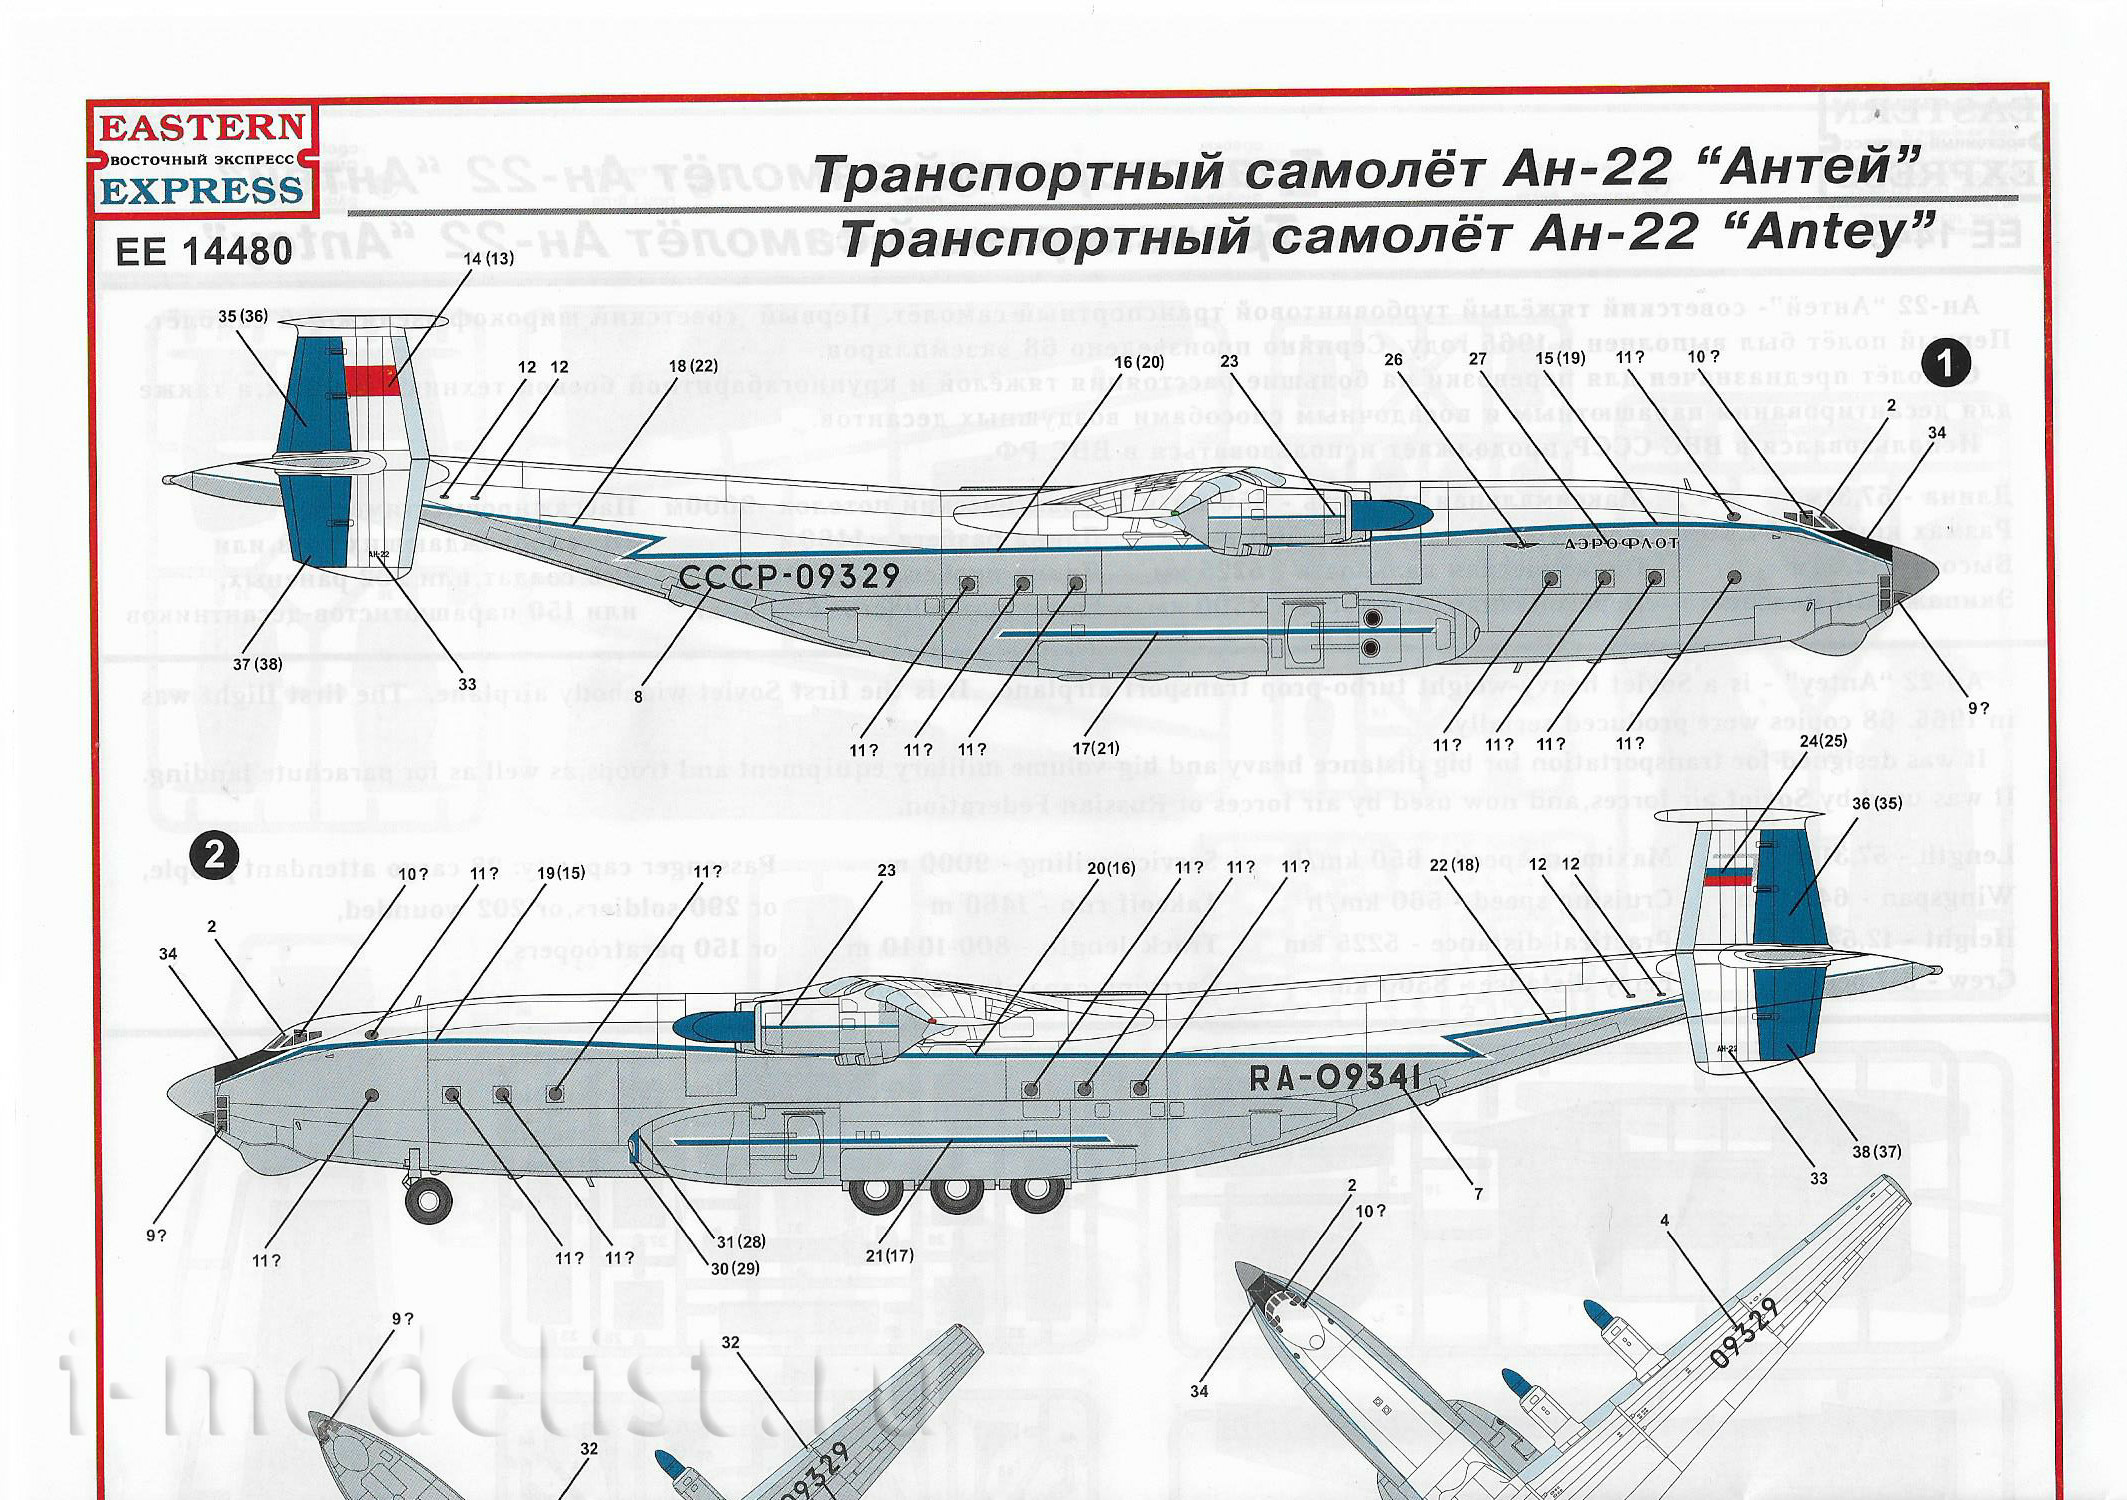 14480 Восточный экспресс 1/144 Тяжелый транспортный самолет Ан-22 поздний